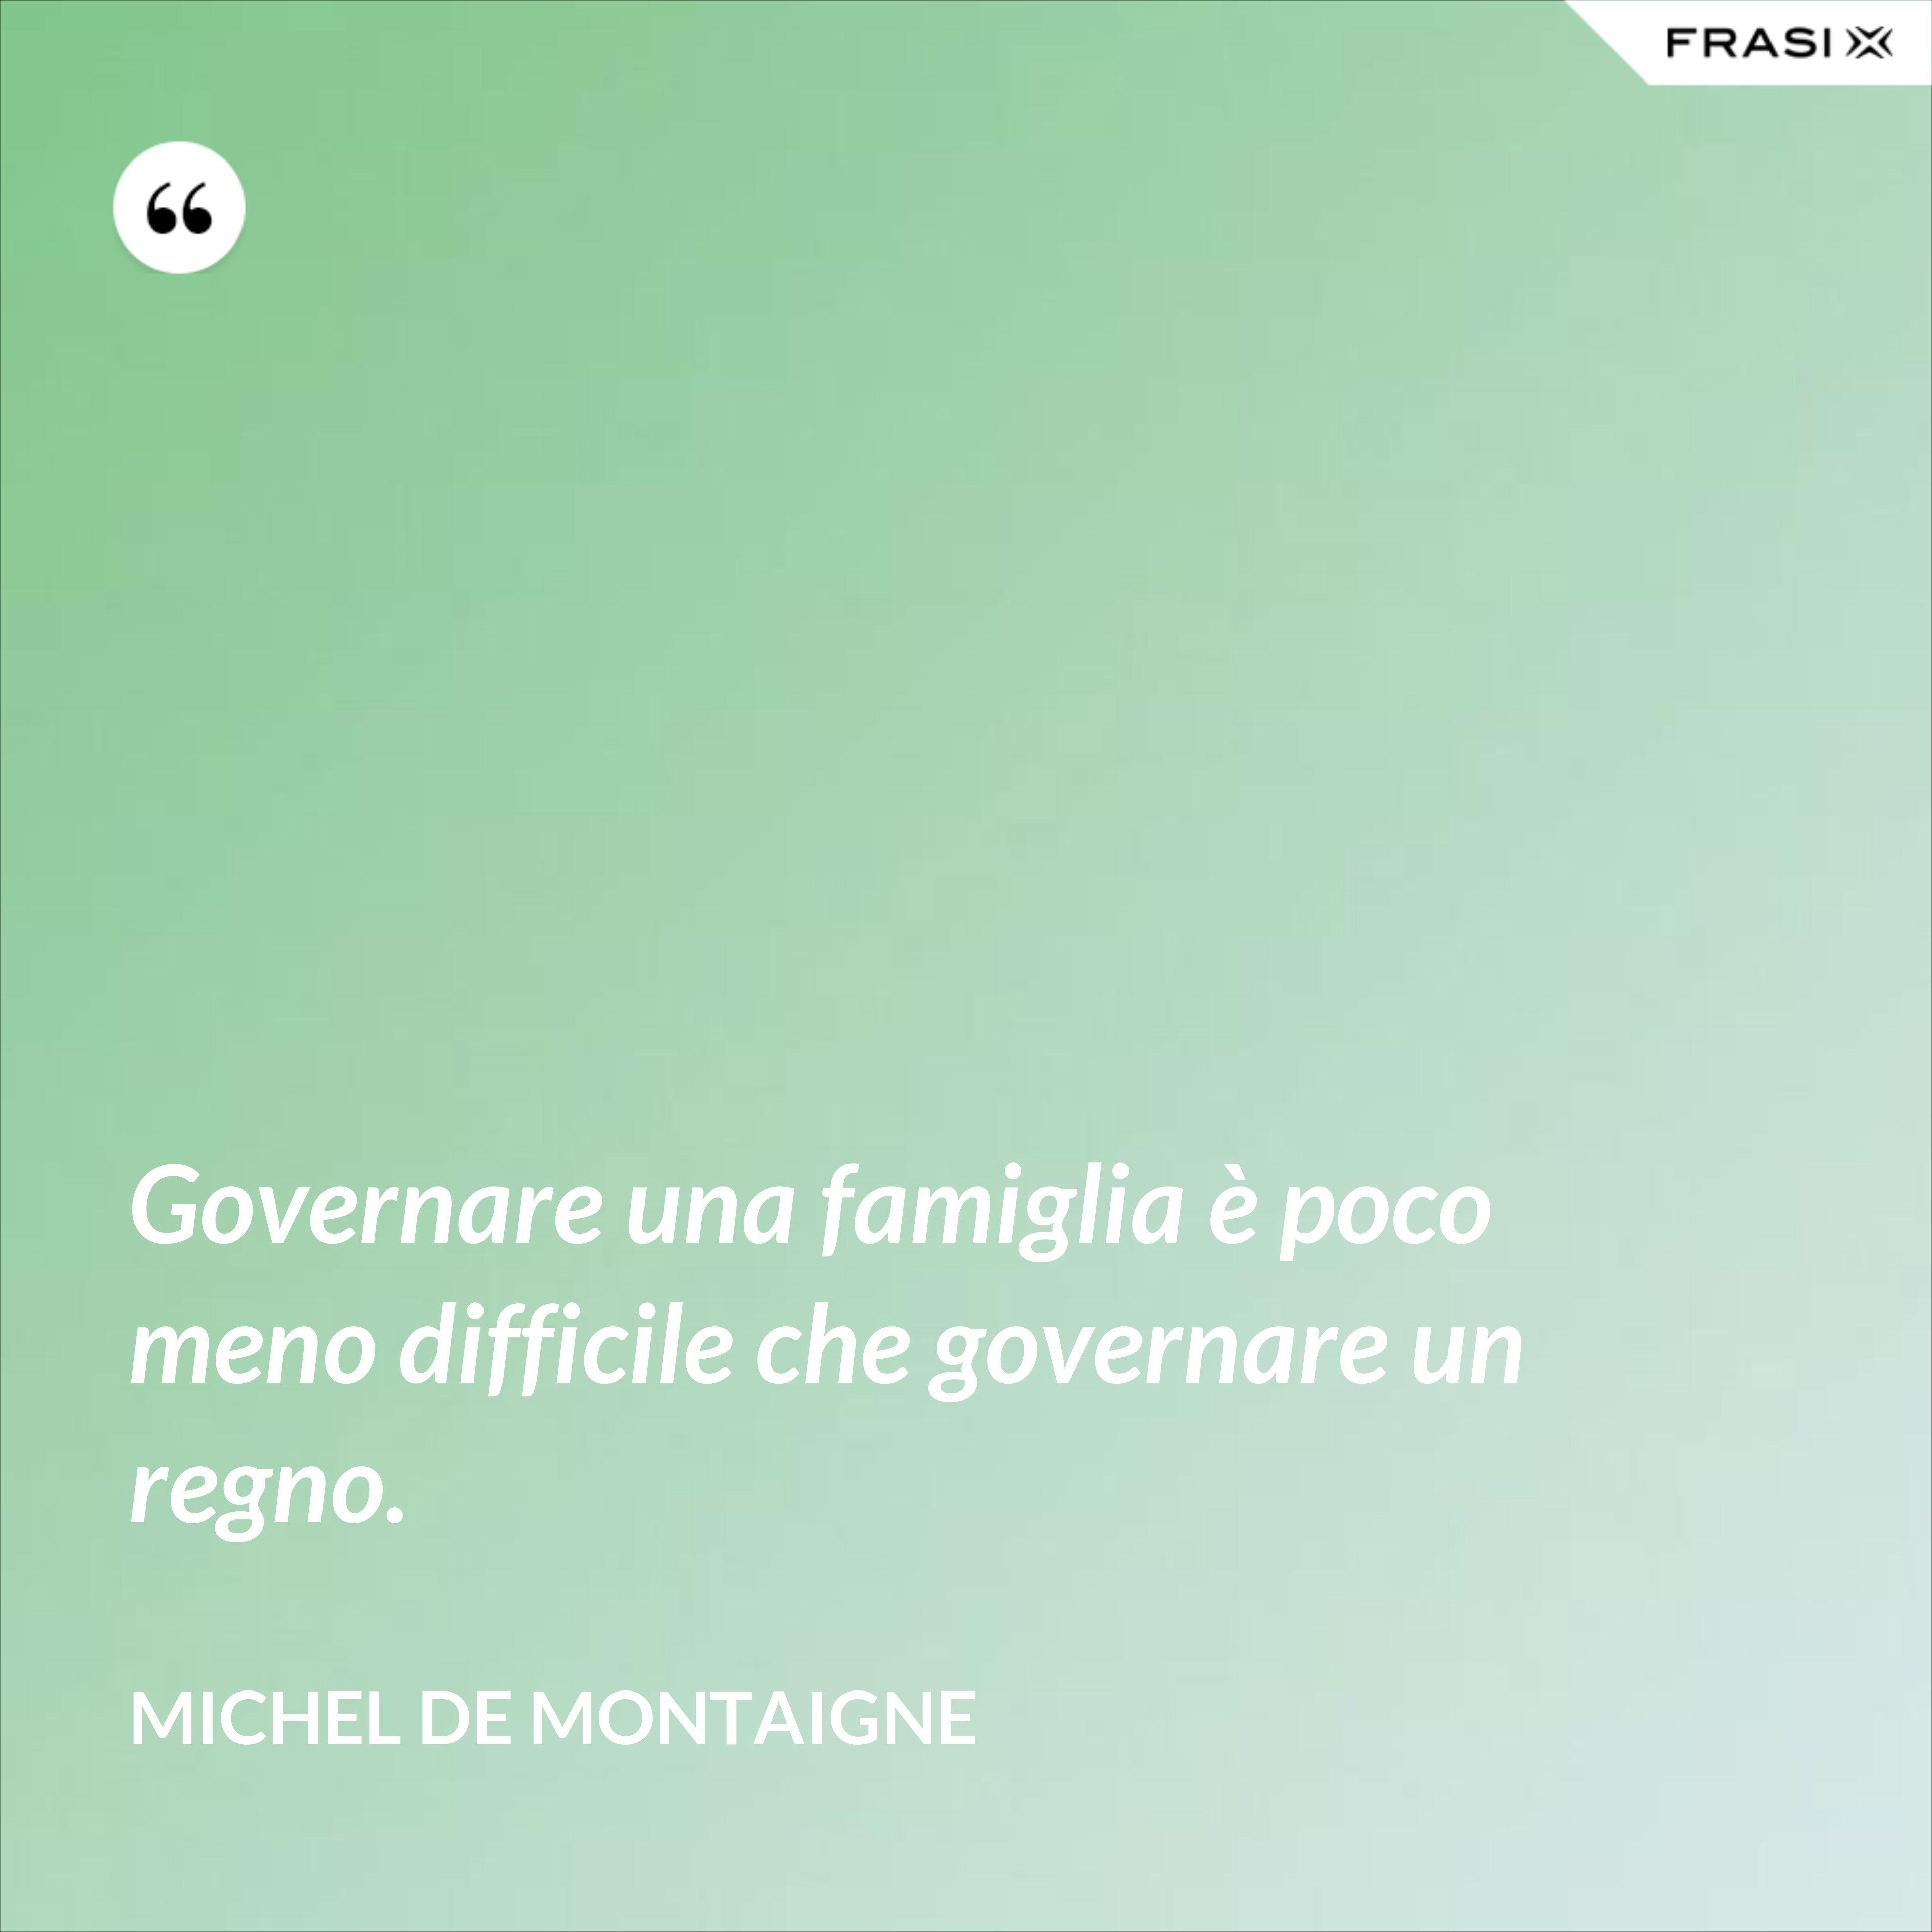 Governare una famiglia è poco meno difficile che governare un regno. - Michel de Montaigne